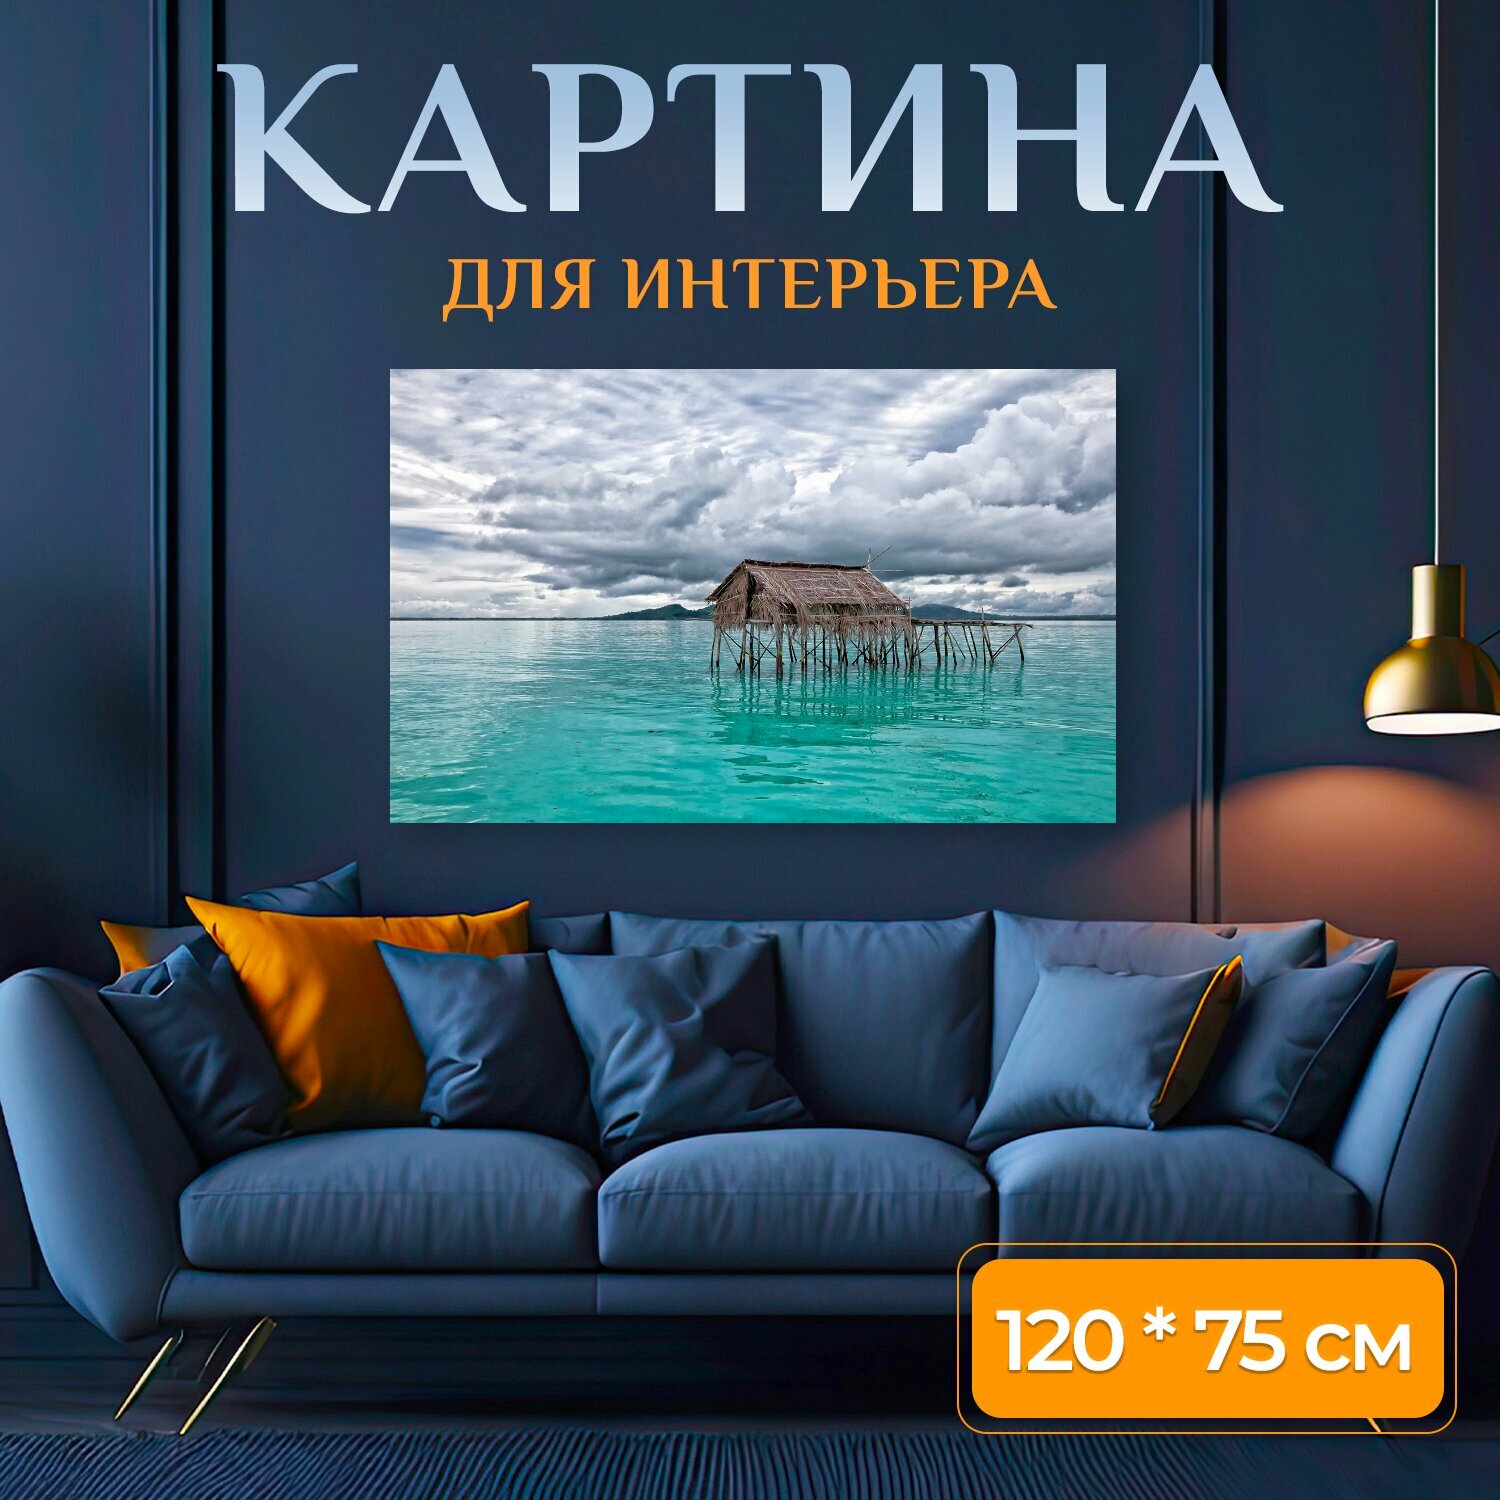 Картина на холсте "Мелководное море, воду лить, бирюза" на подрамнике 120х75 см. для интерьера